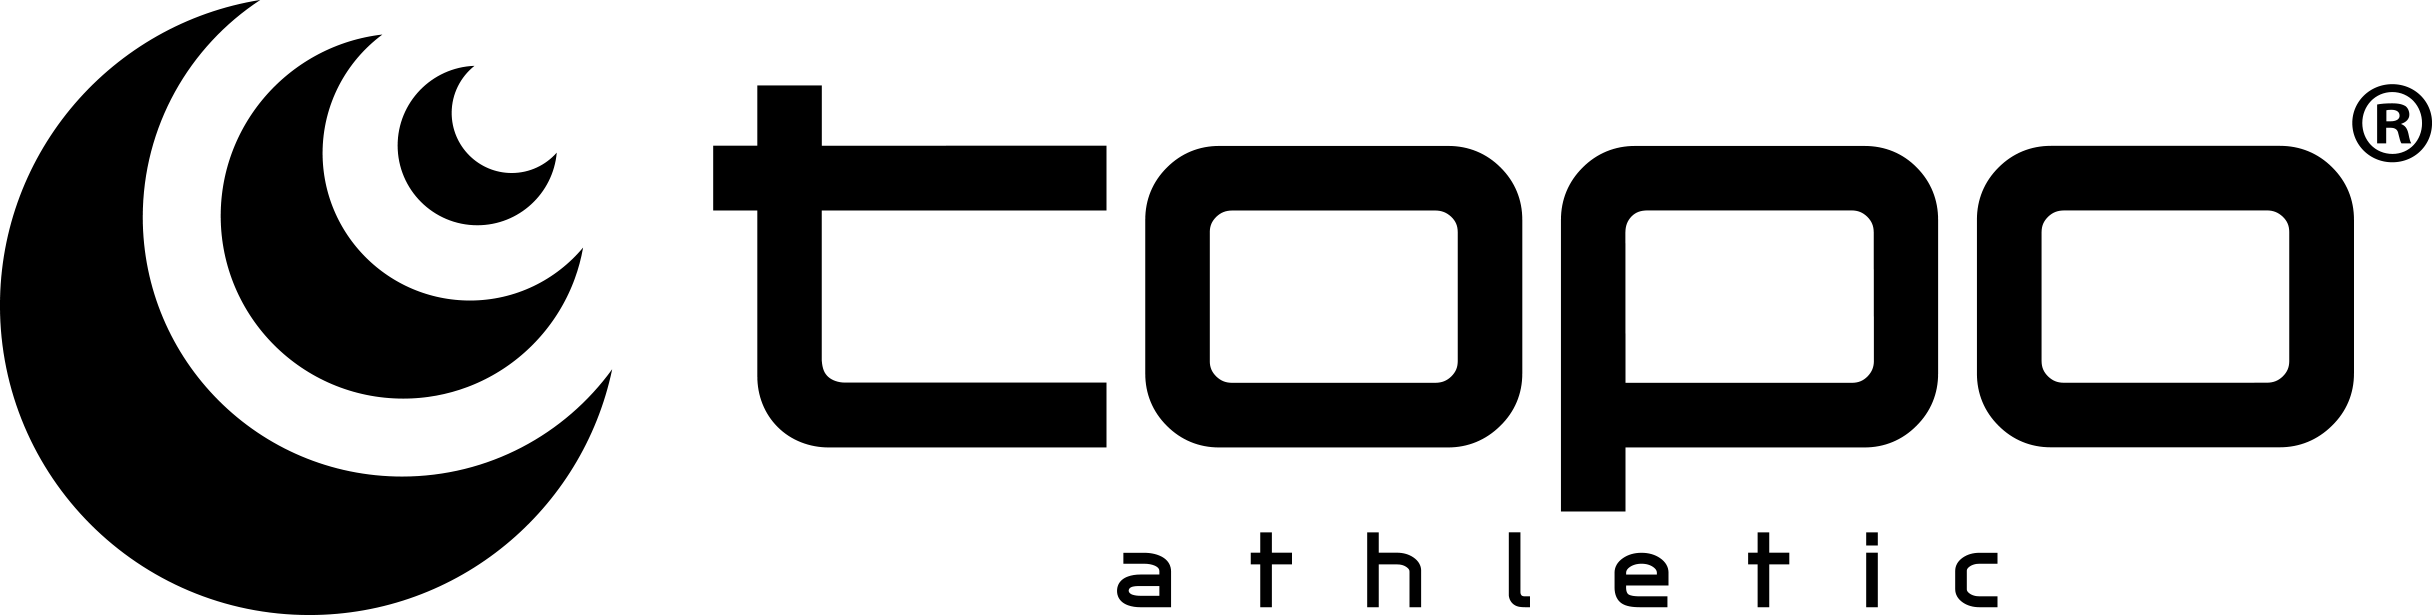 Topo athletic fullständig svart vit logo